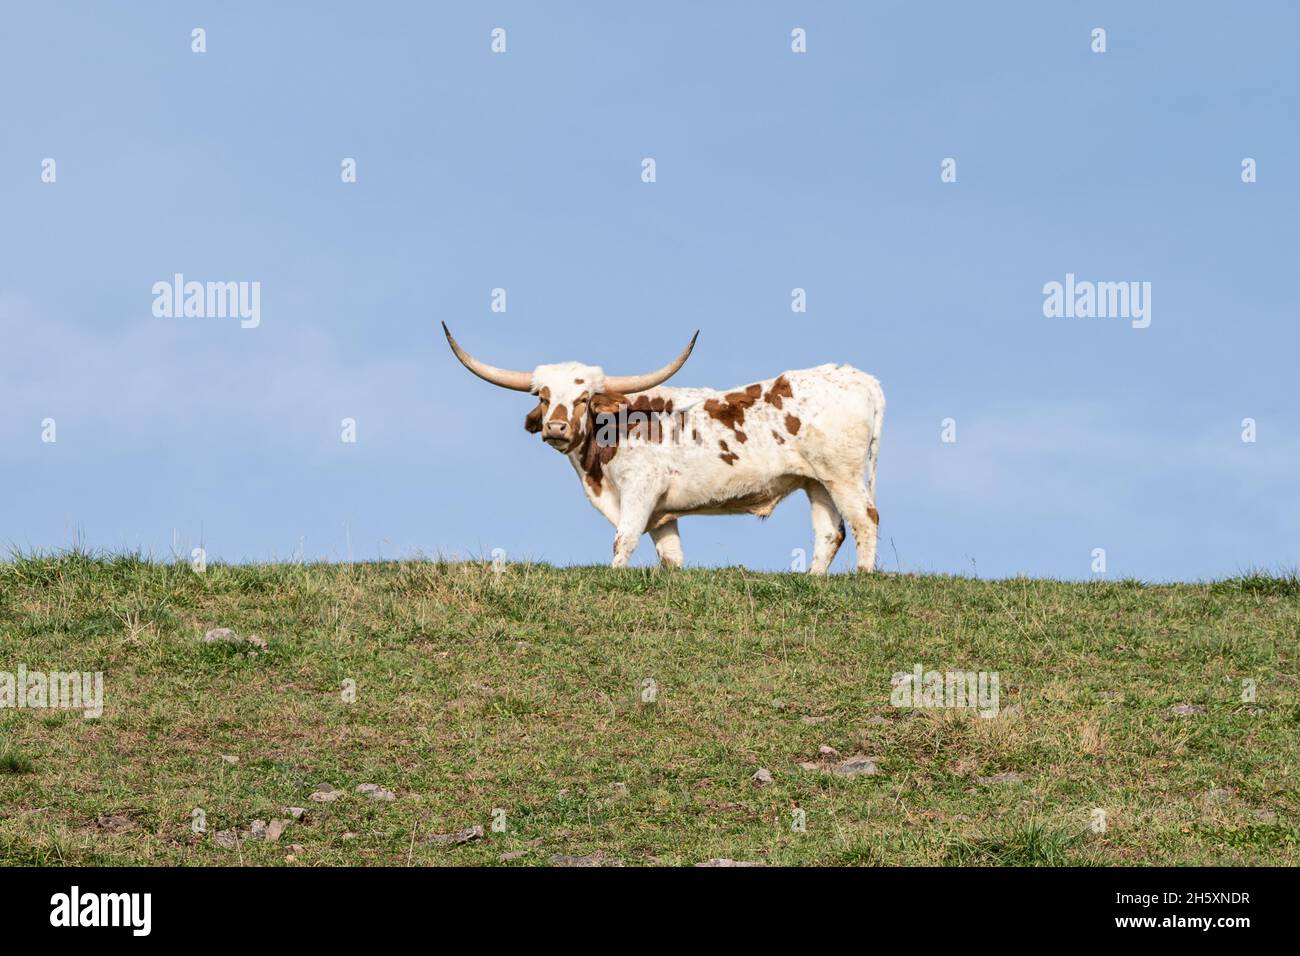 La vache longhorn du Texas pâture sur une colline verdoyante.Prise de vue sous un angle faible Banque D'Images